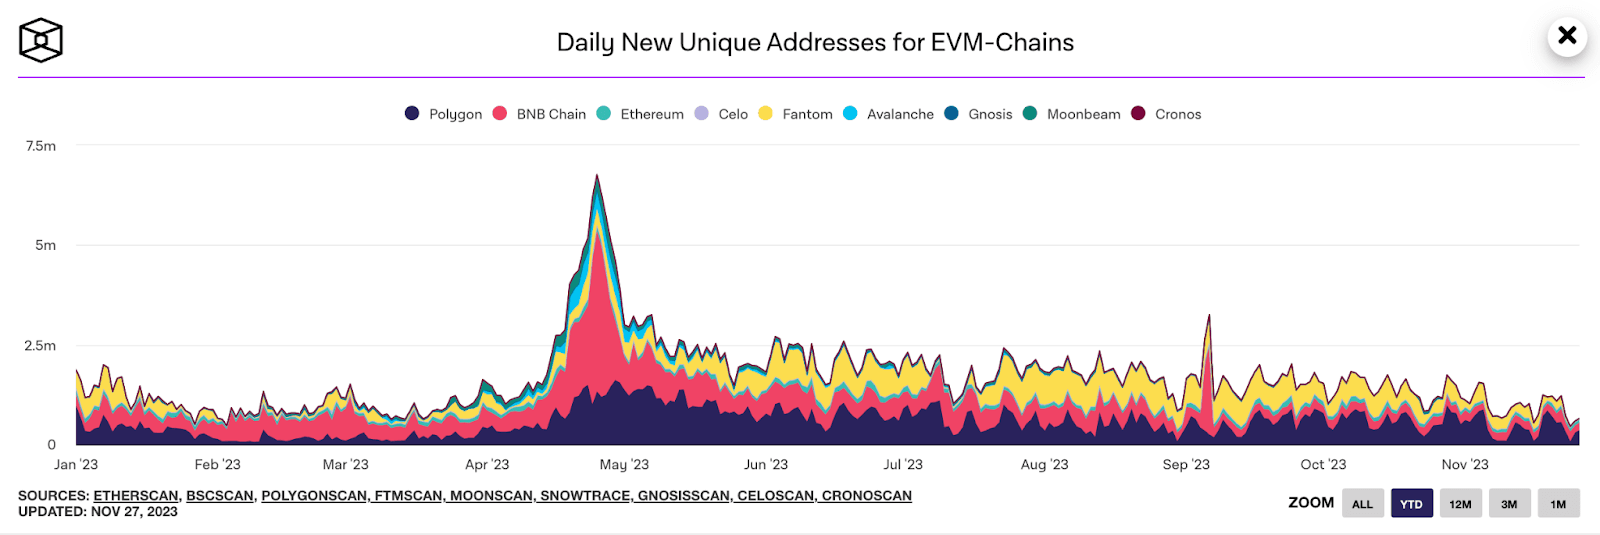 số lượng địa chỉ độc nhất mới tạo trên các blockchain evm